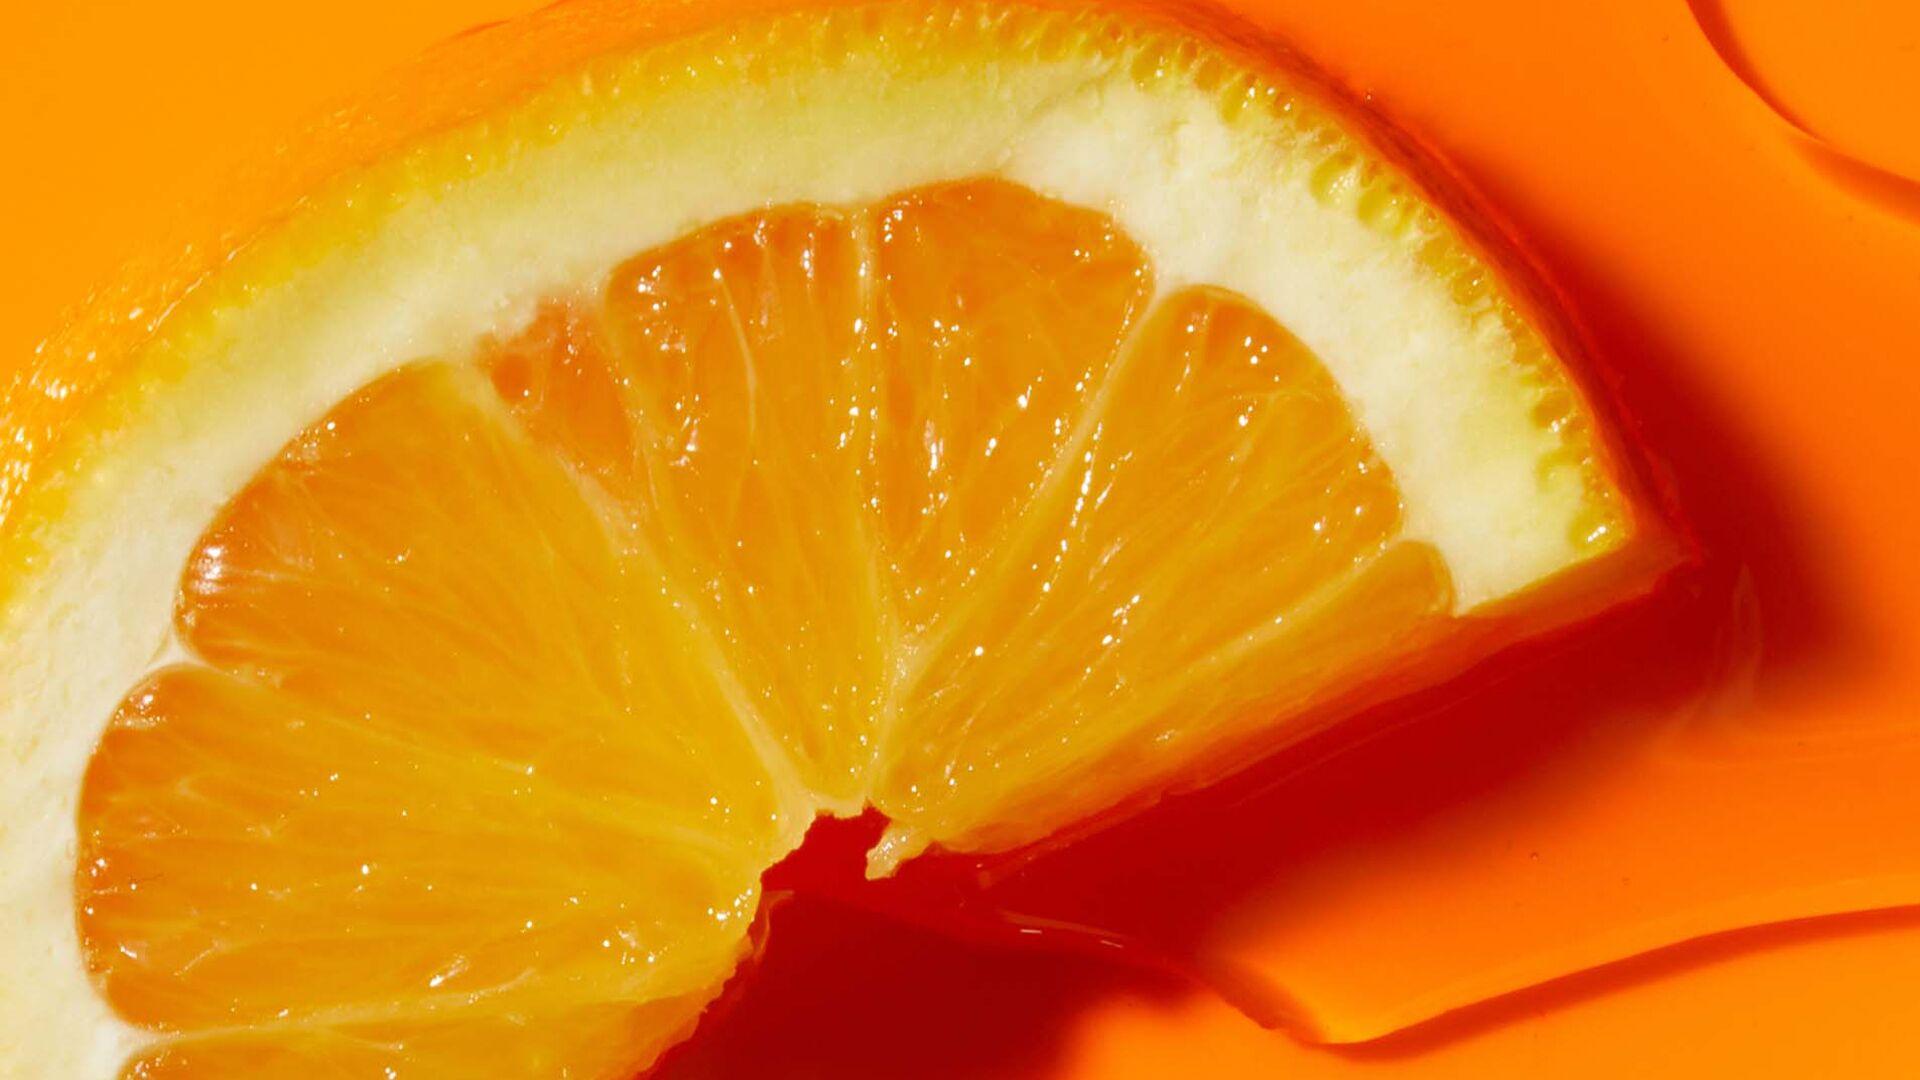 Close up of orange representing Vitamin C